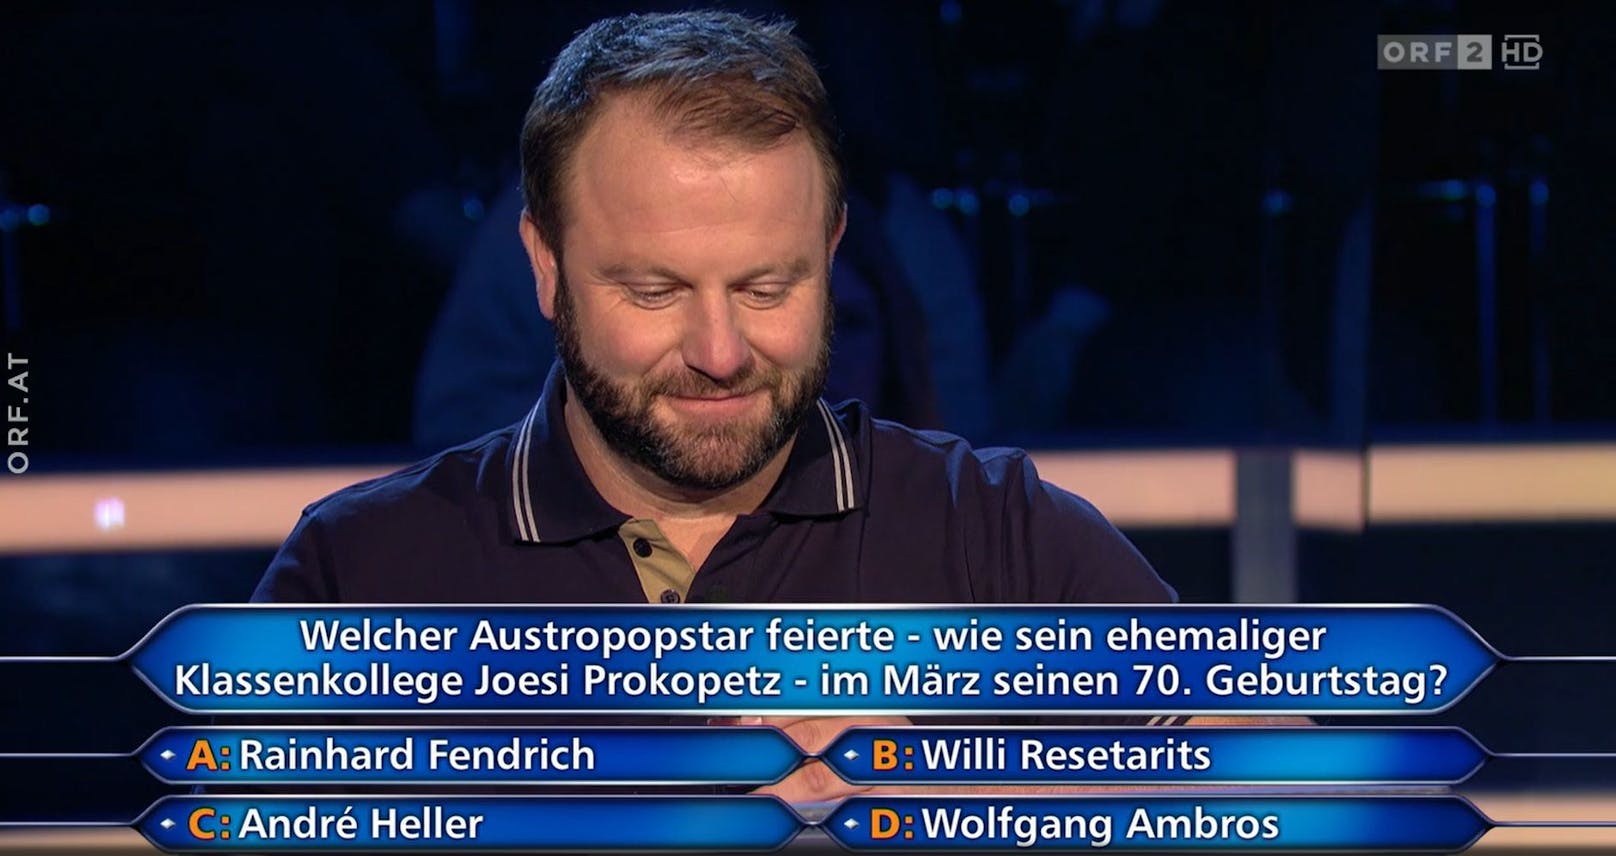 Die Frage mit Willi Resetarits als Antwortmöglichkeit bei der Millionenshow im ORF